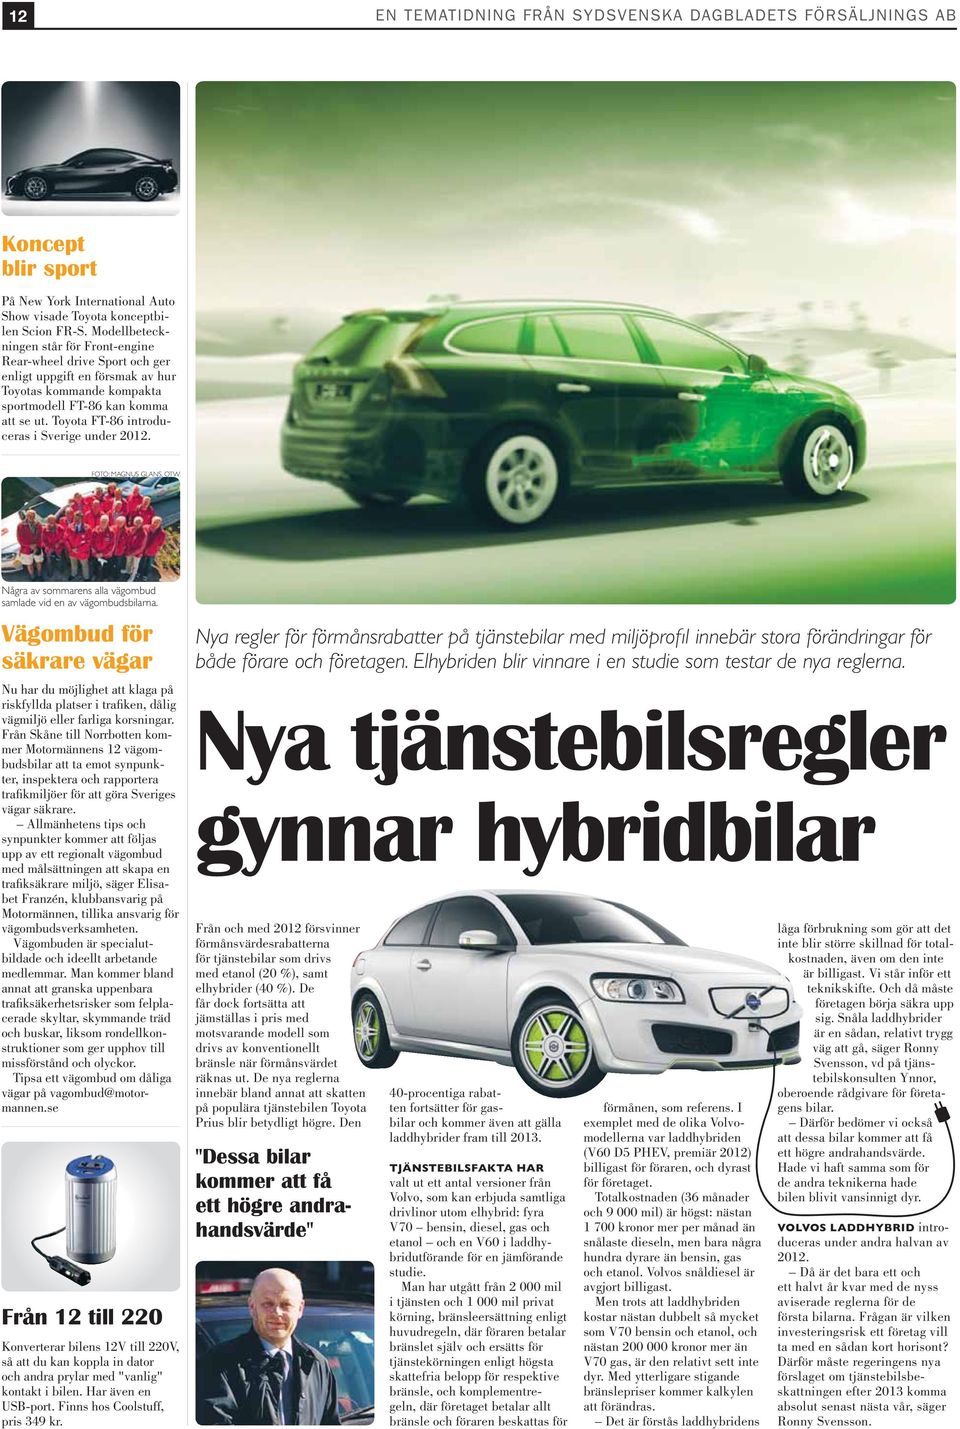 Toyota FT-86 introduceras i Sverige under 2012. FOTO: MAGNUS GLANS, OTW. Några av sommarens alla vägombud samlade vid en av vägombudsbilarna.